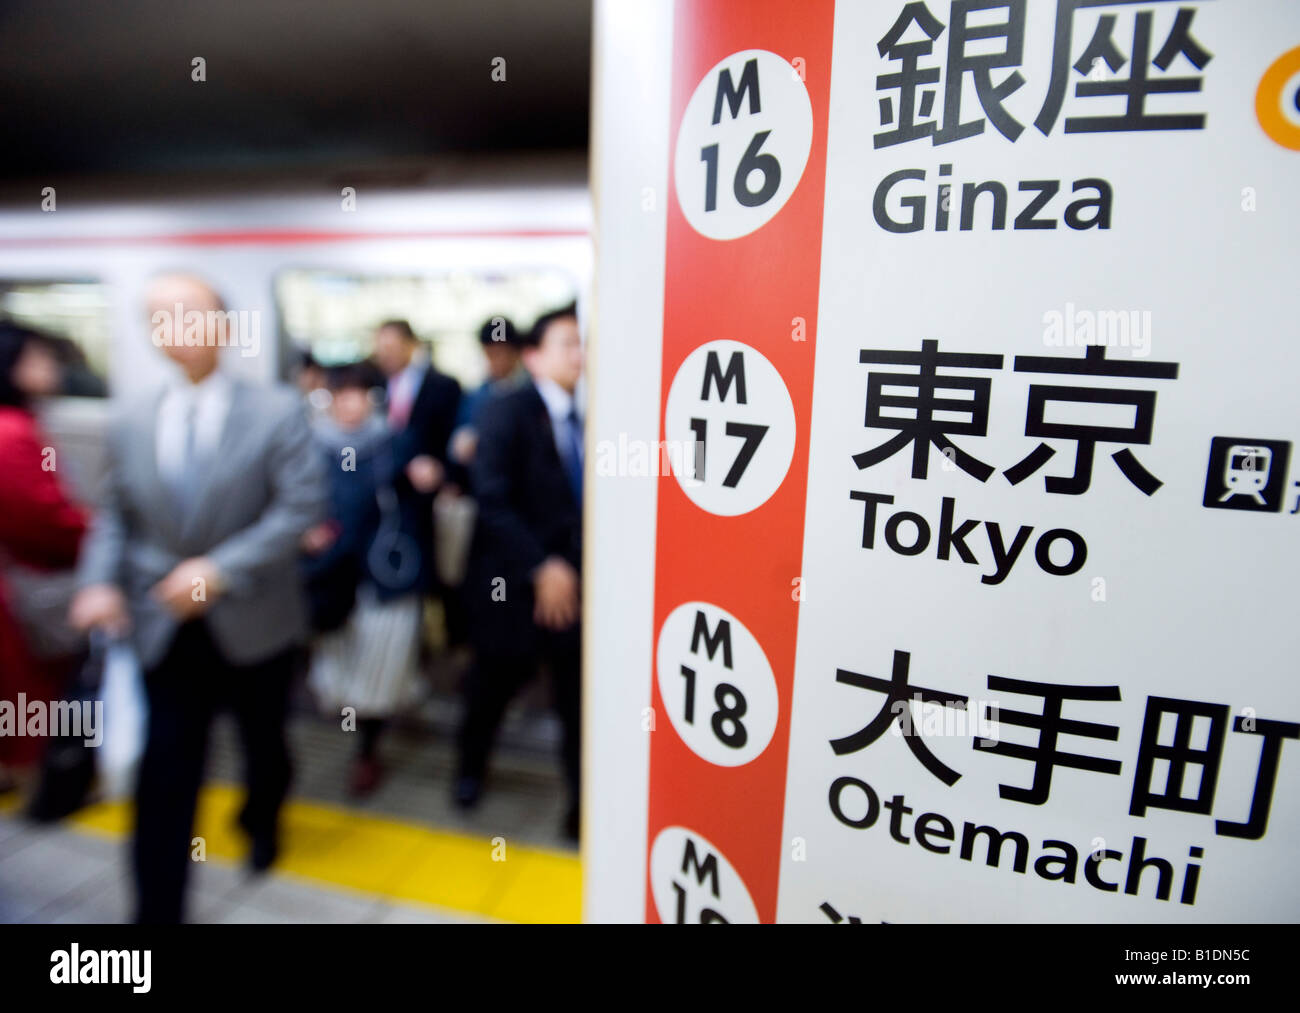 Dettaglio della linea di metropolitana route information board presso la stazione della metropolitana di Tokyo 2008 Foto Stock